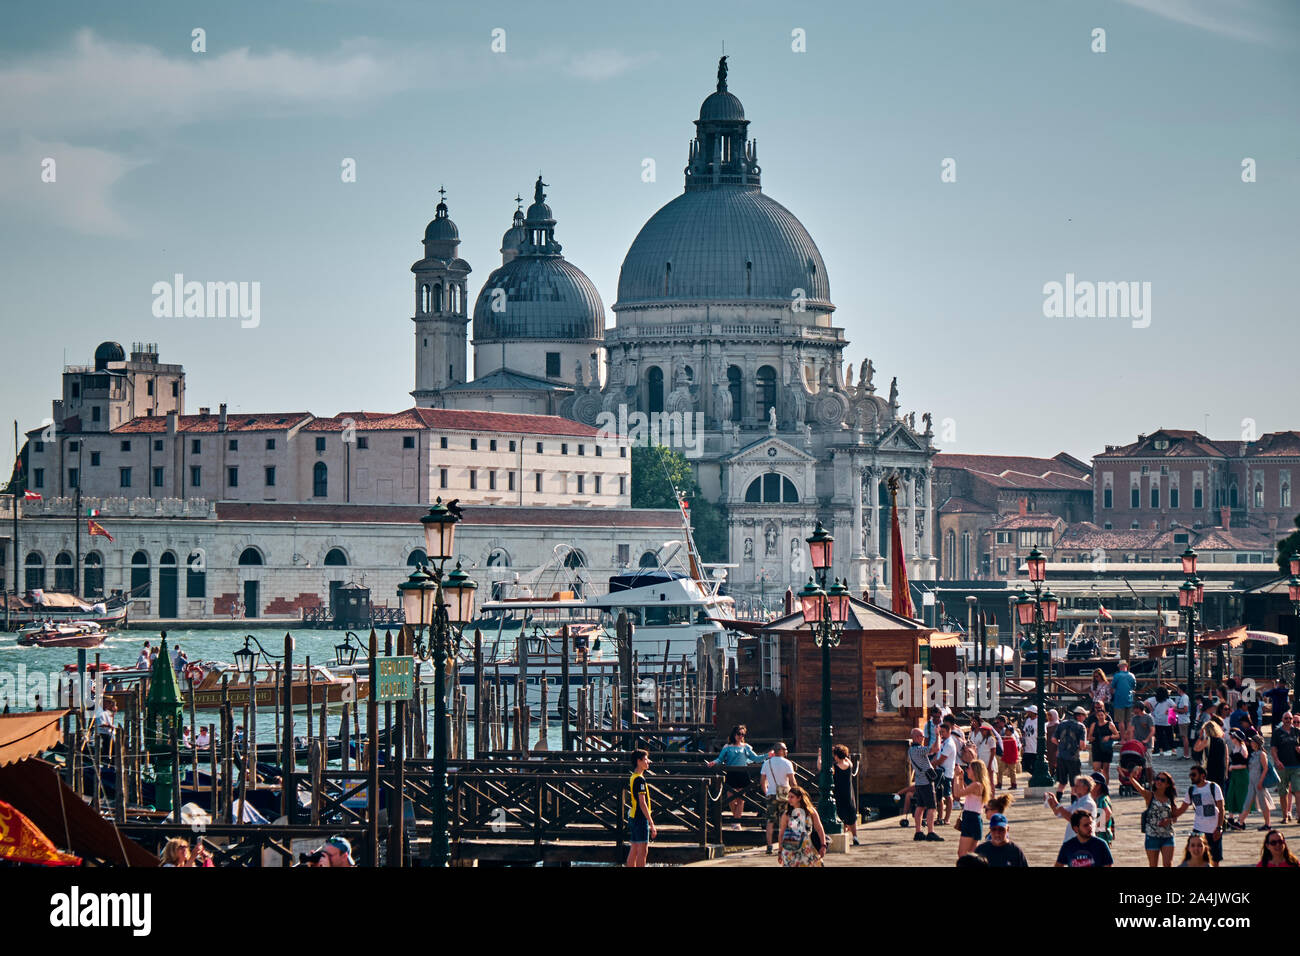 Venecia, Italia - Junio 19, 2019: El paisaje del canal alrededor de Santa Maria della Salute en la ciudad de Venecia, Italia Foto de stock